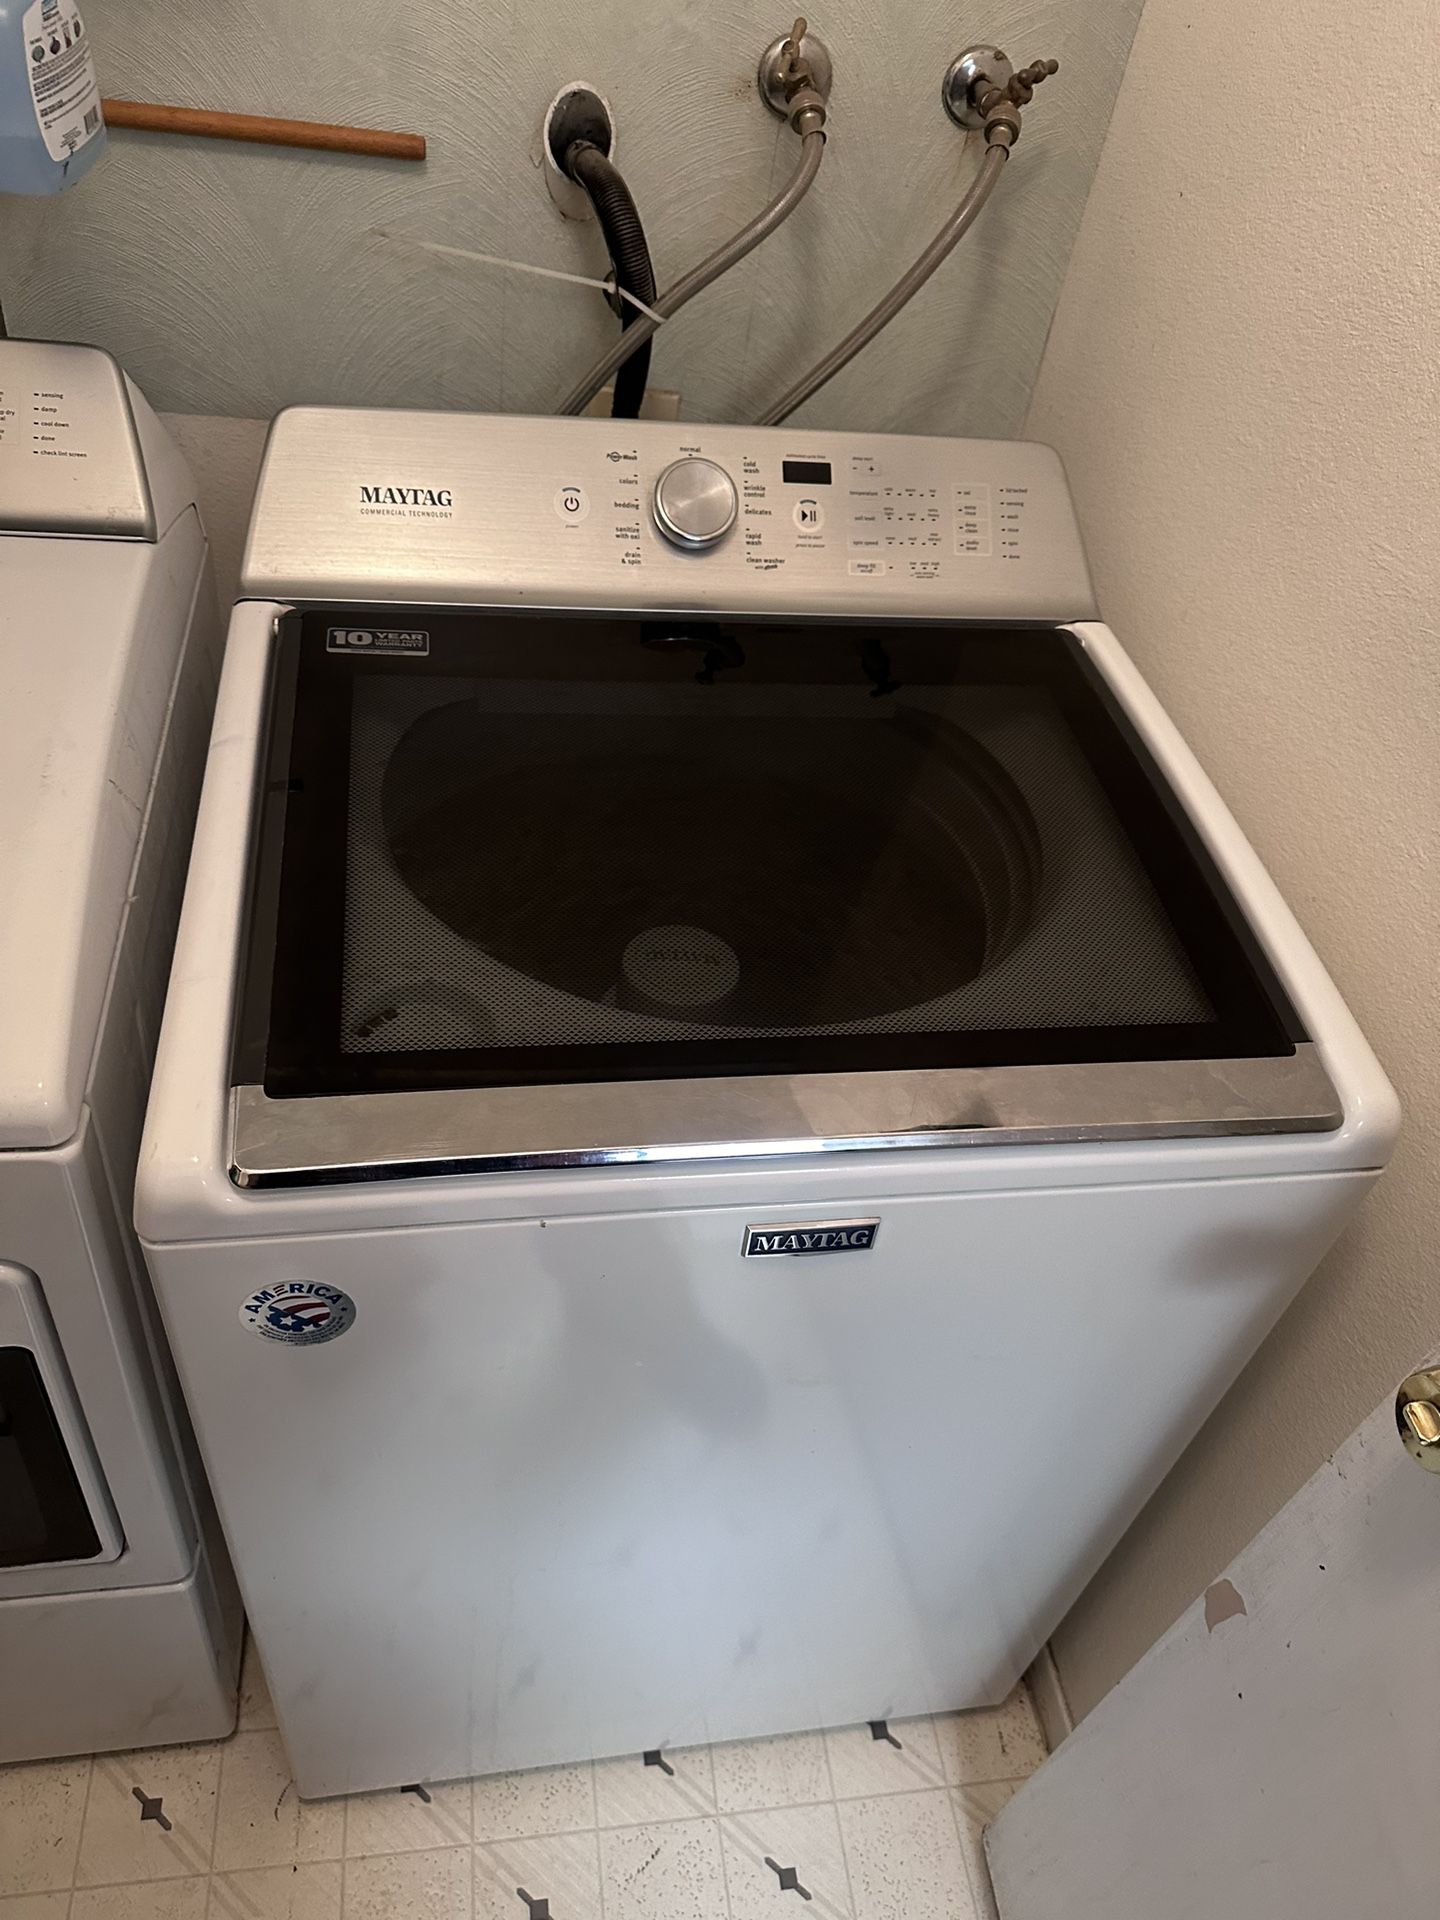 Washing Machine 3 Years Old.